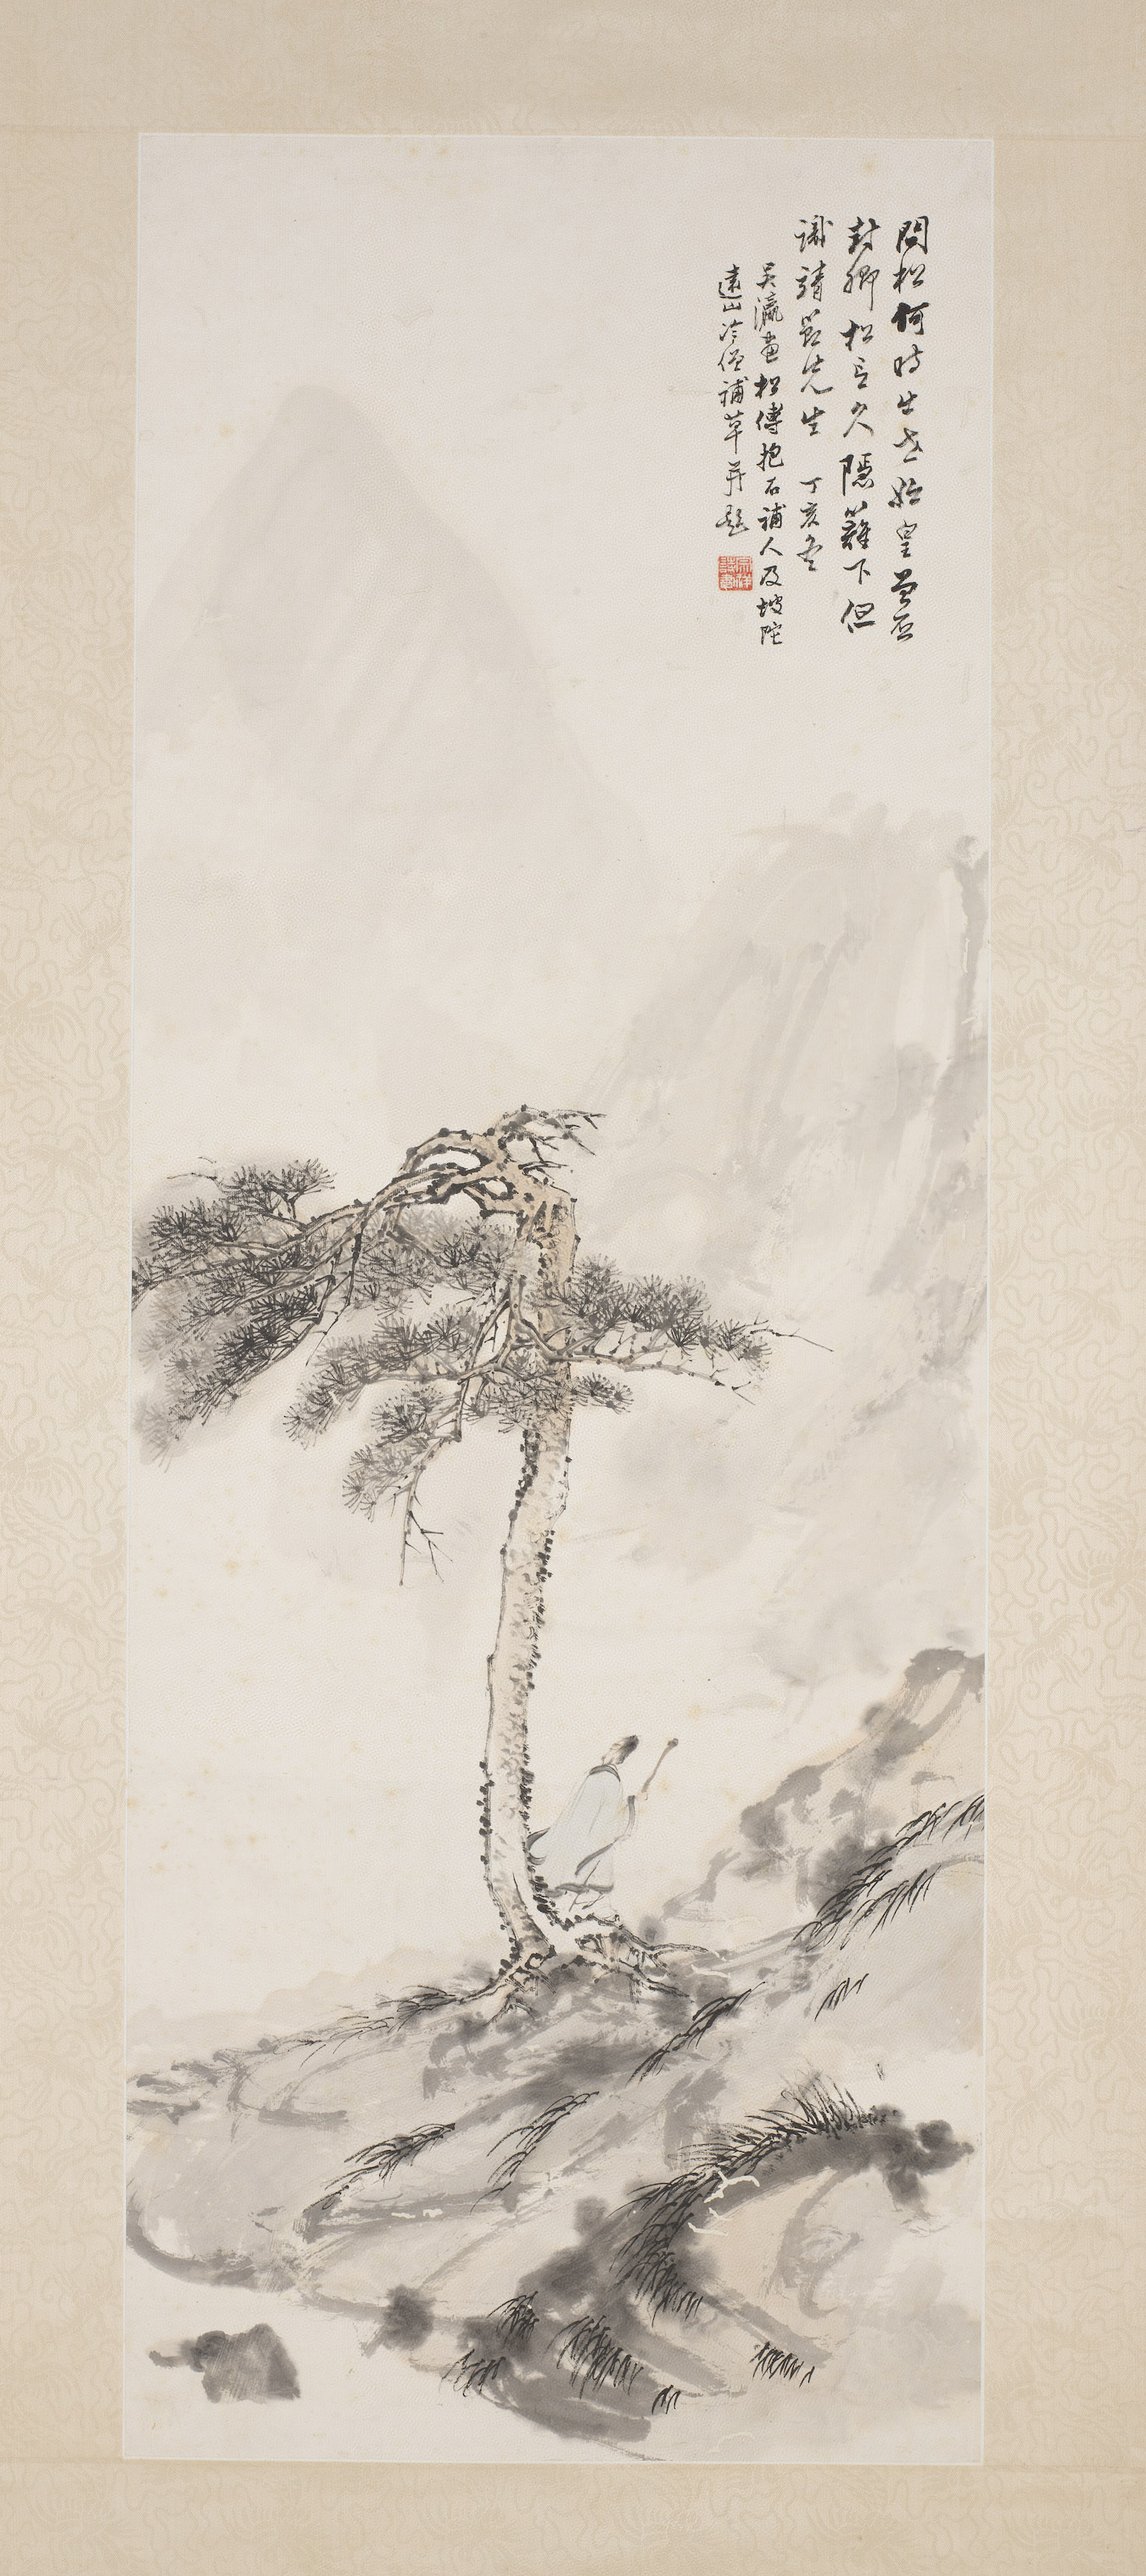 Lofty Scholar Below a Pine Tree